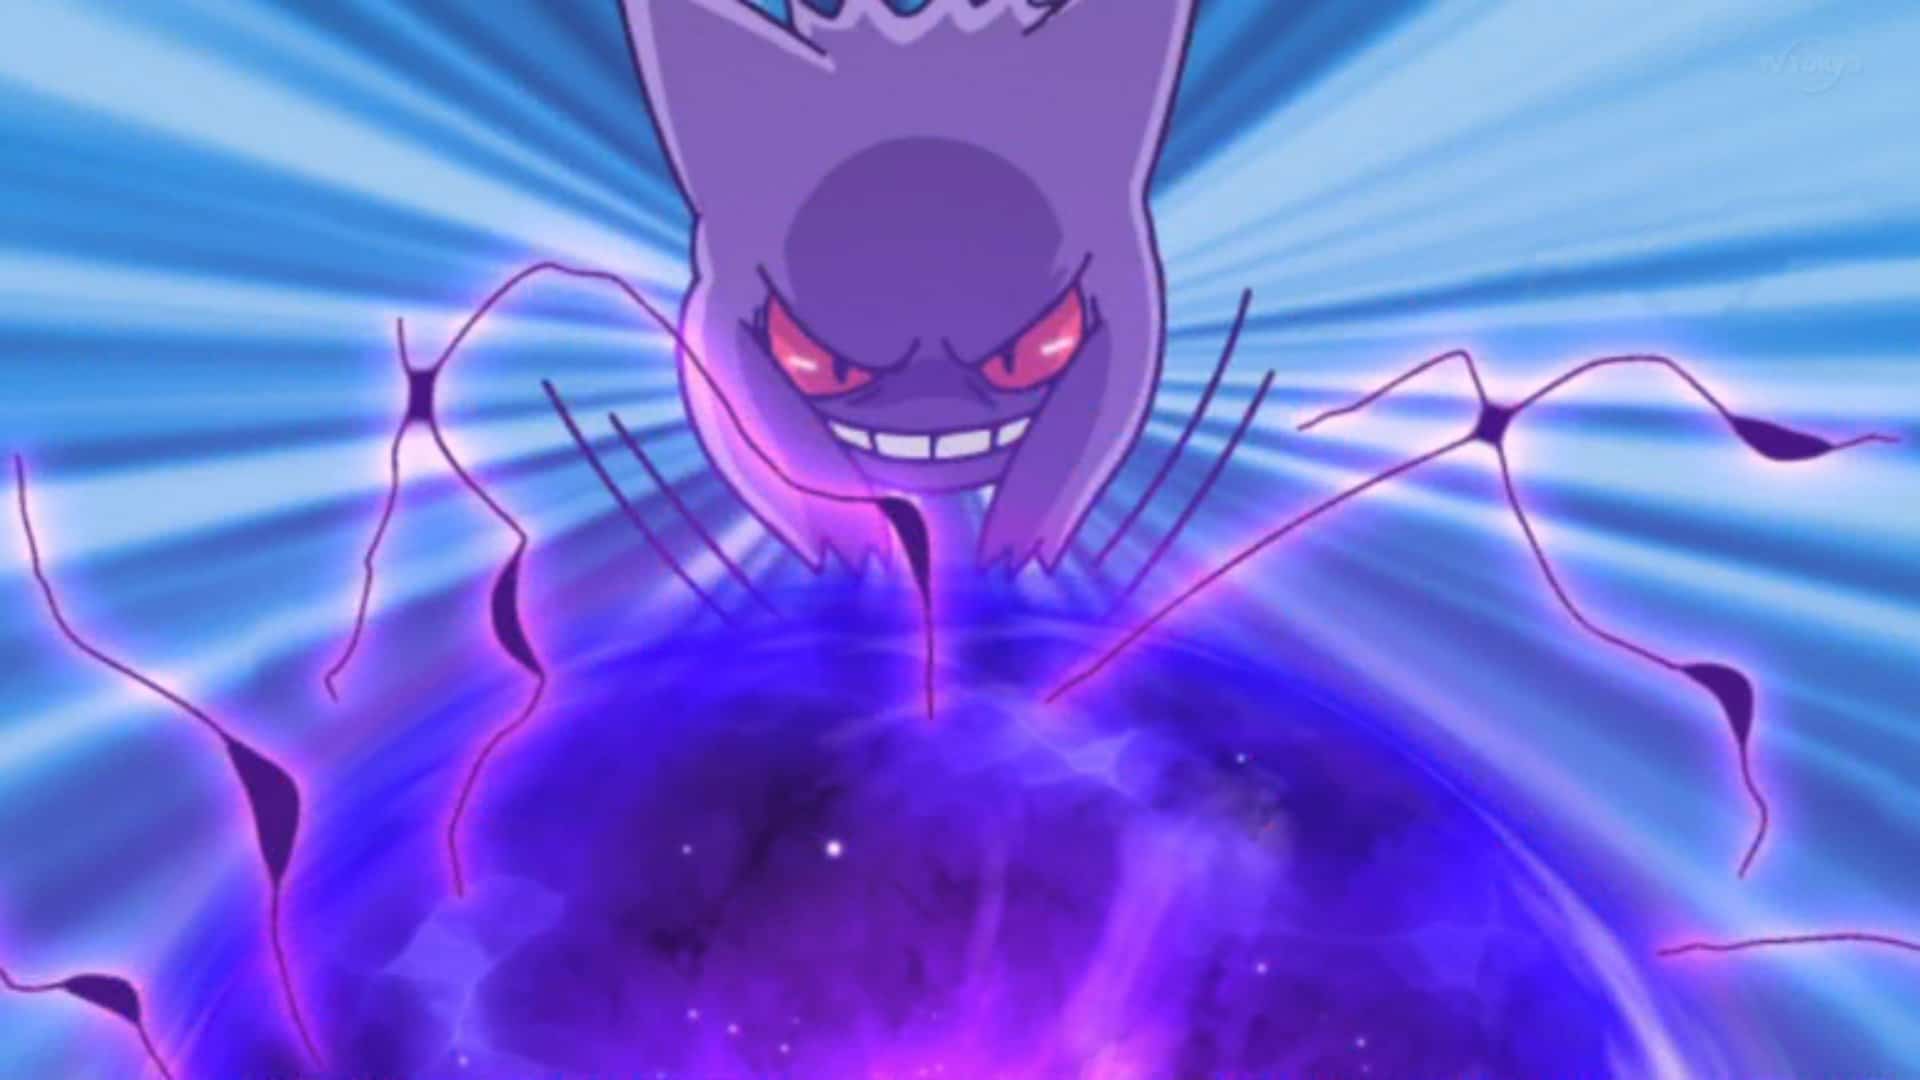 Pokémon Escarlata y Púrpura: tabla de tipos con los ataques más efectivos y  más débiles